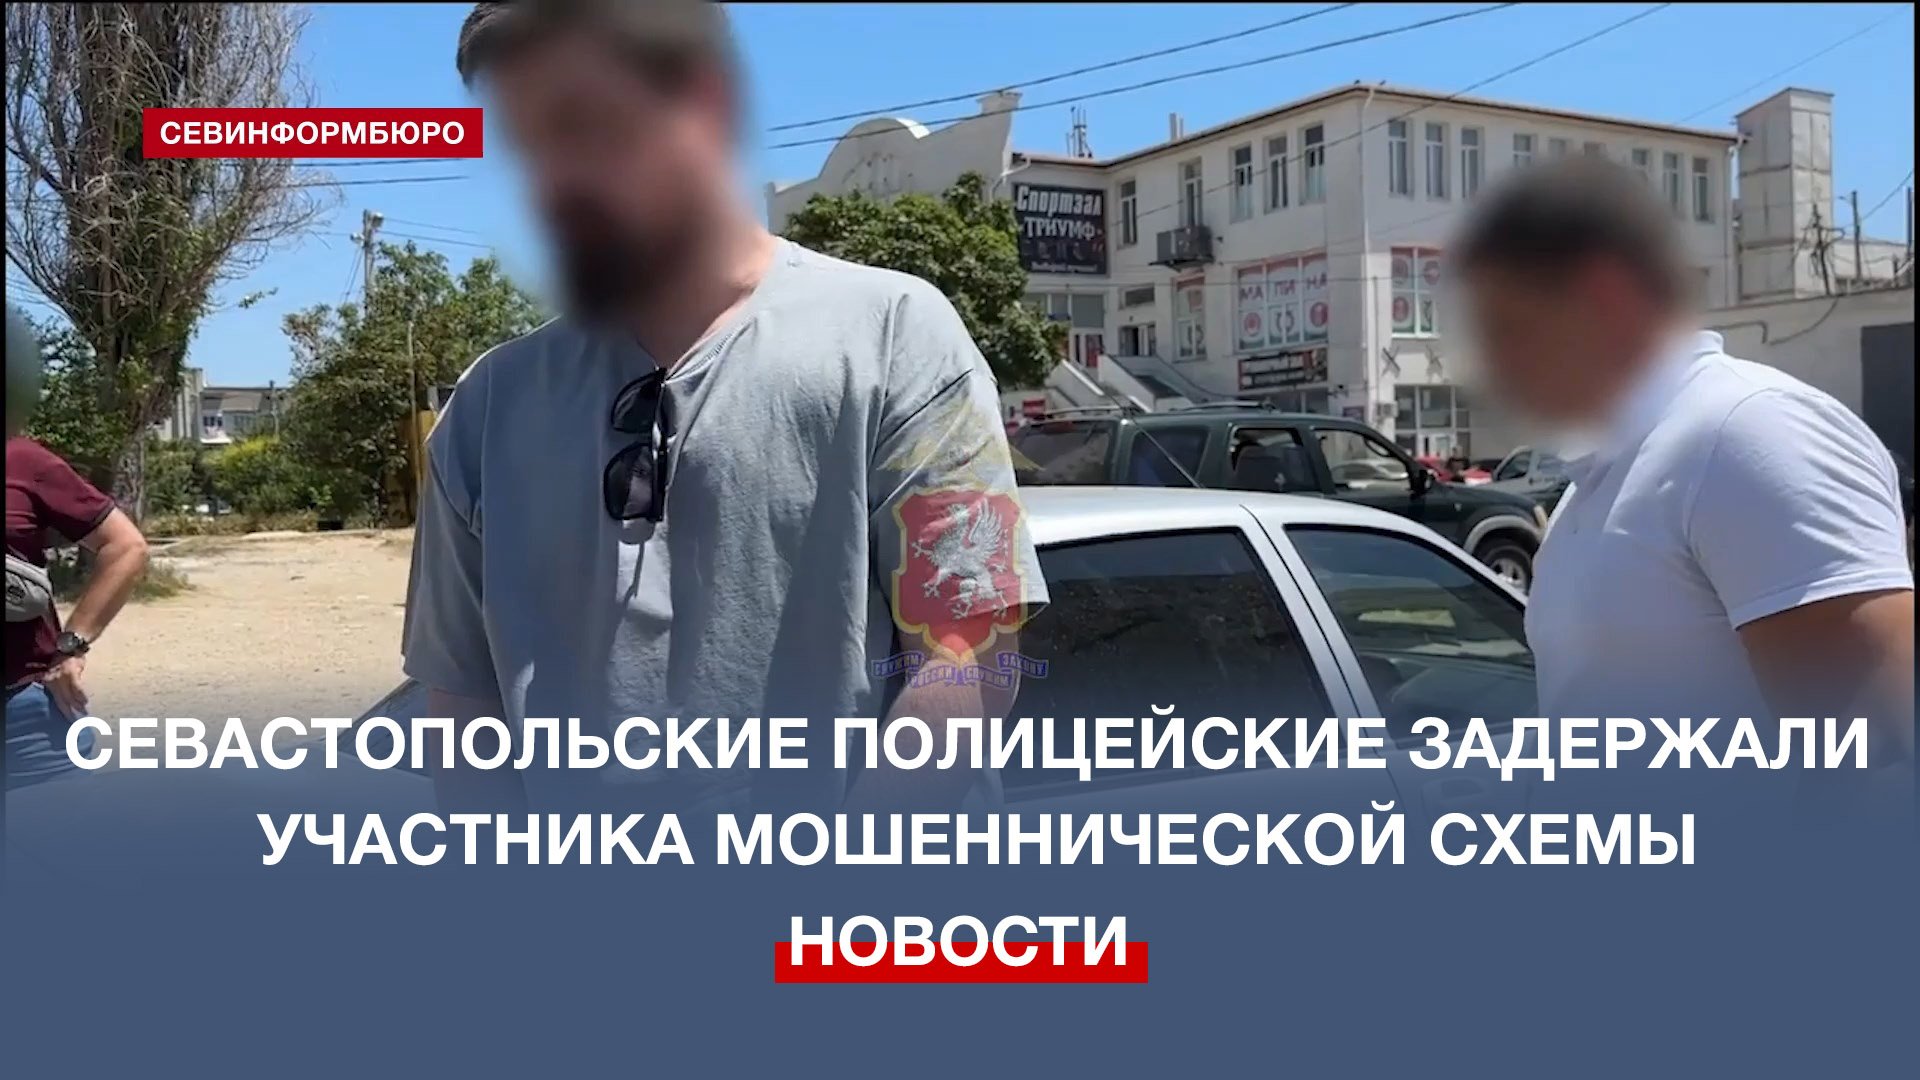 Бывший учитель из Севастополя стал пособником мошенников и украл у пенсионеров 700 тысяч рублей